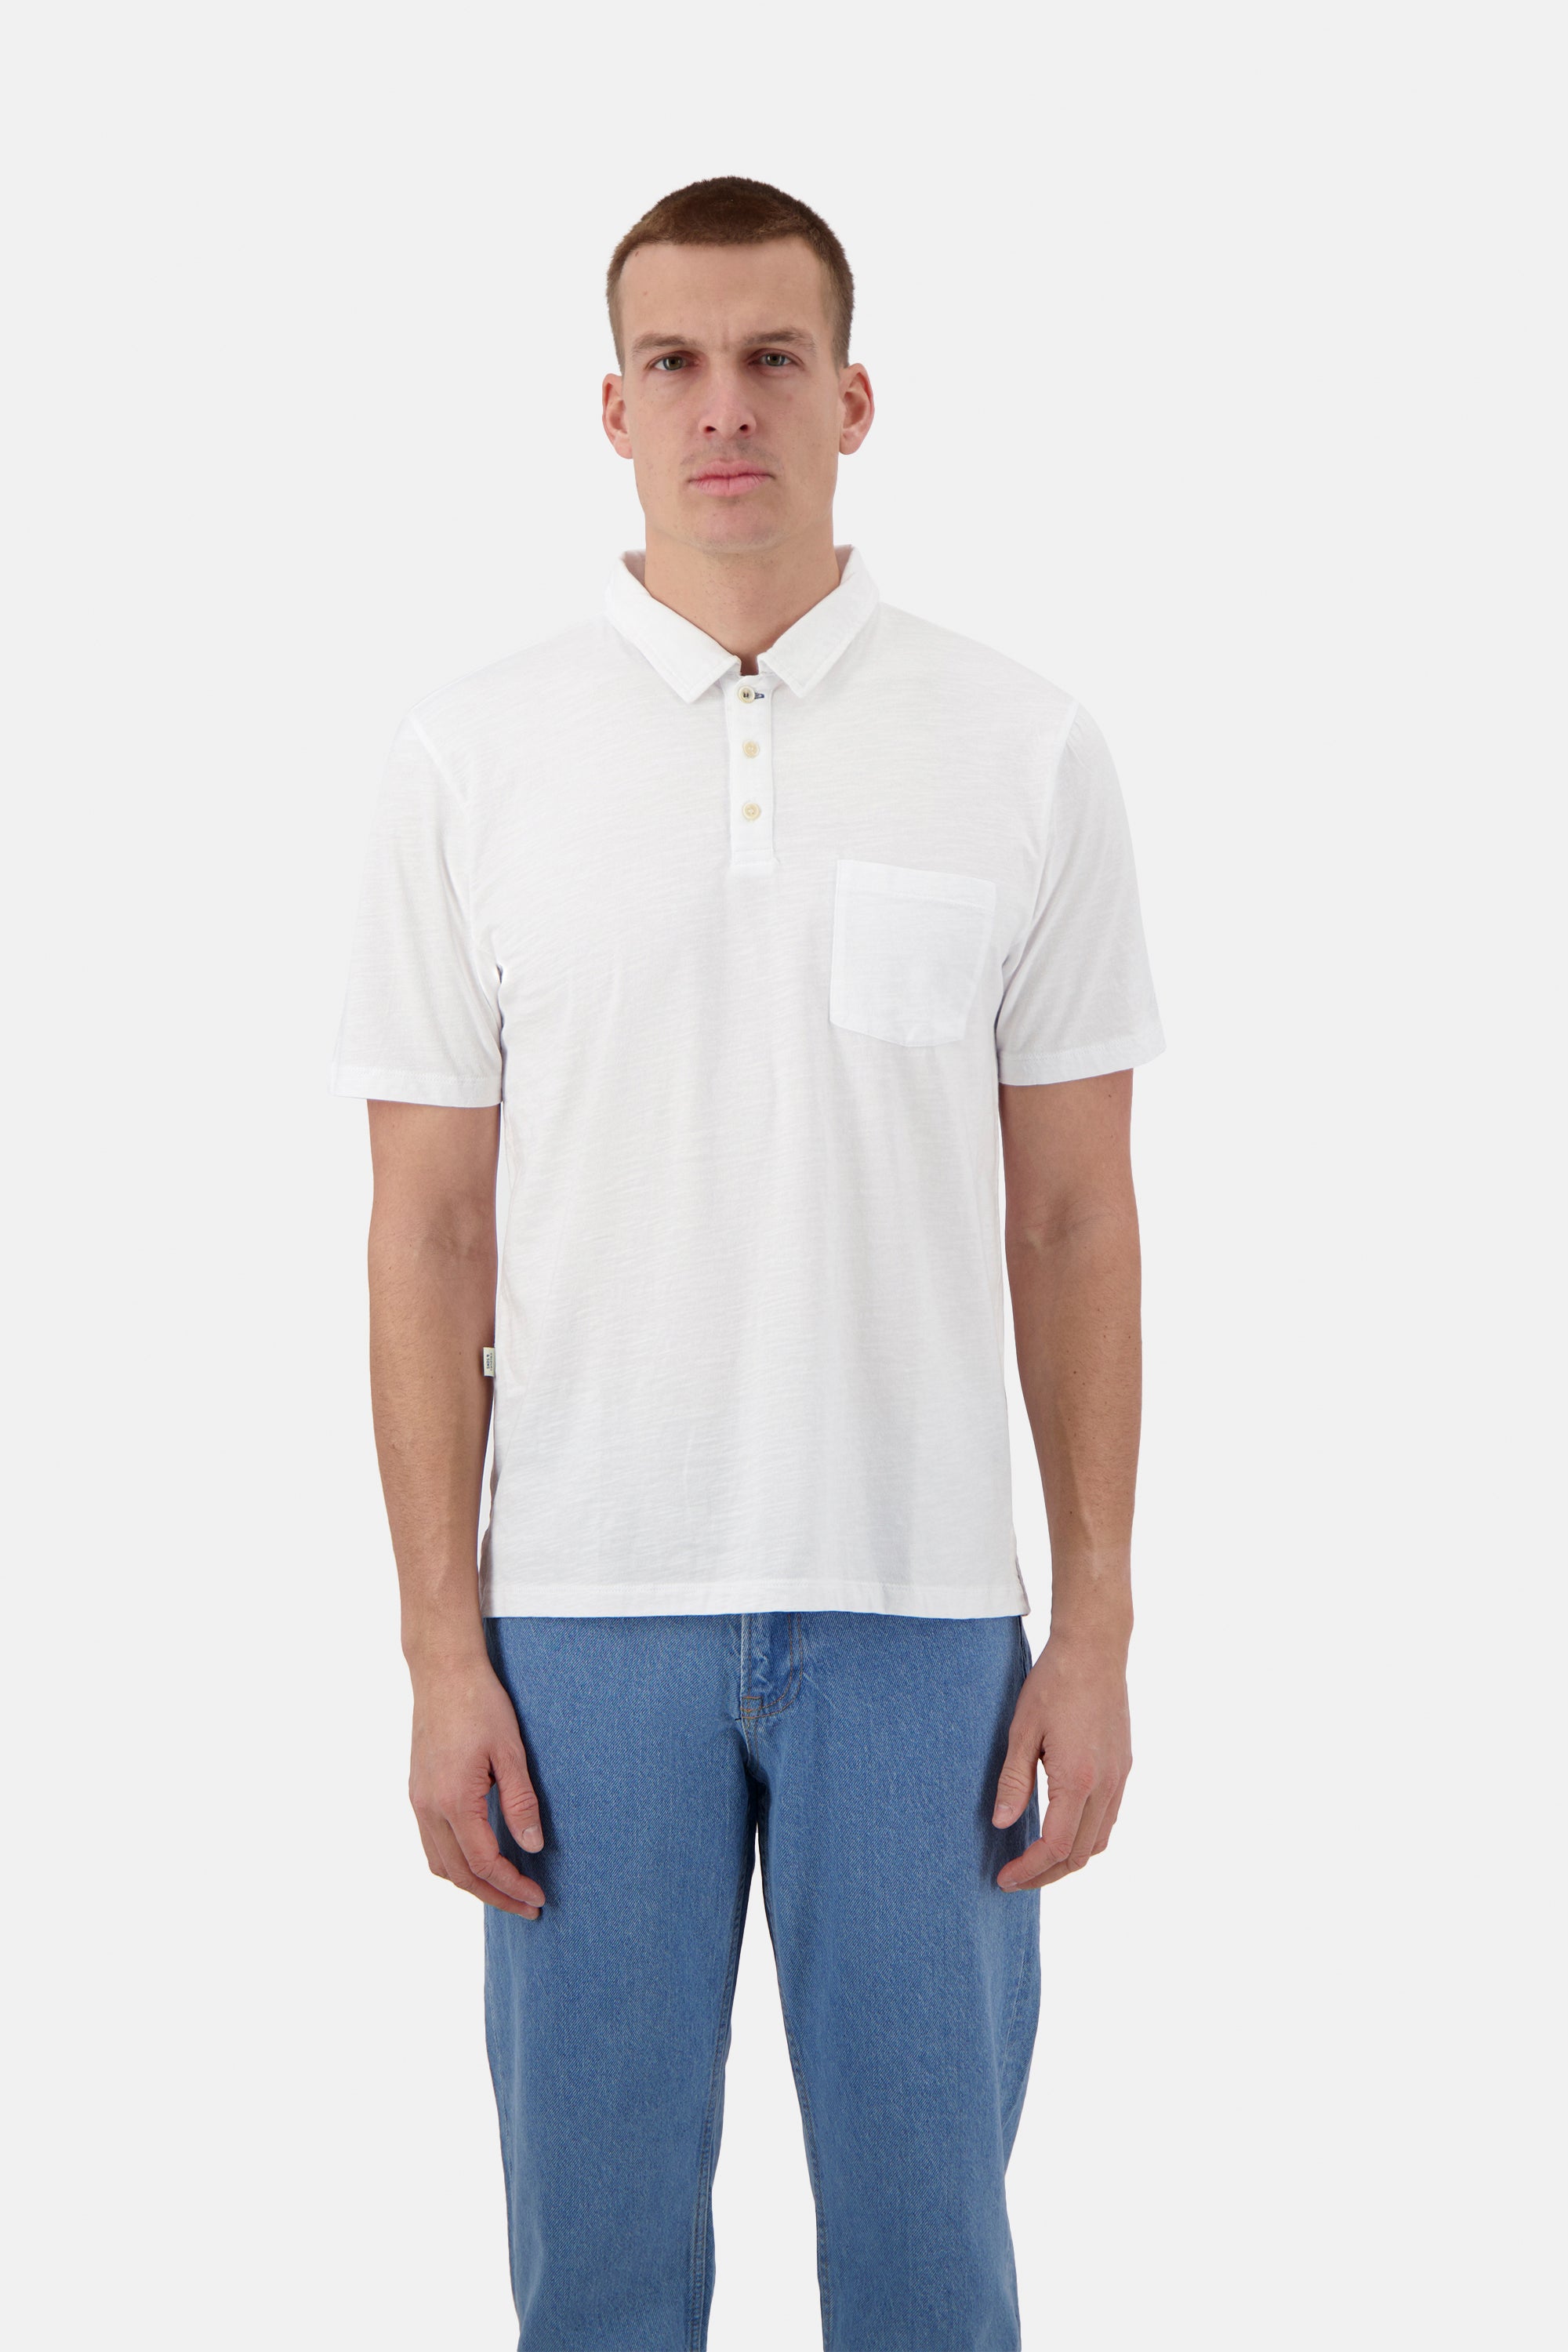 Herren Polo Shirt, weiß, 100% Baumwolle von Colours & Sons